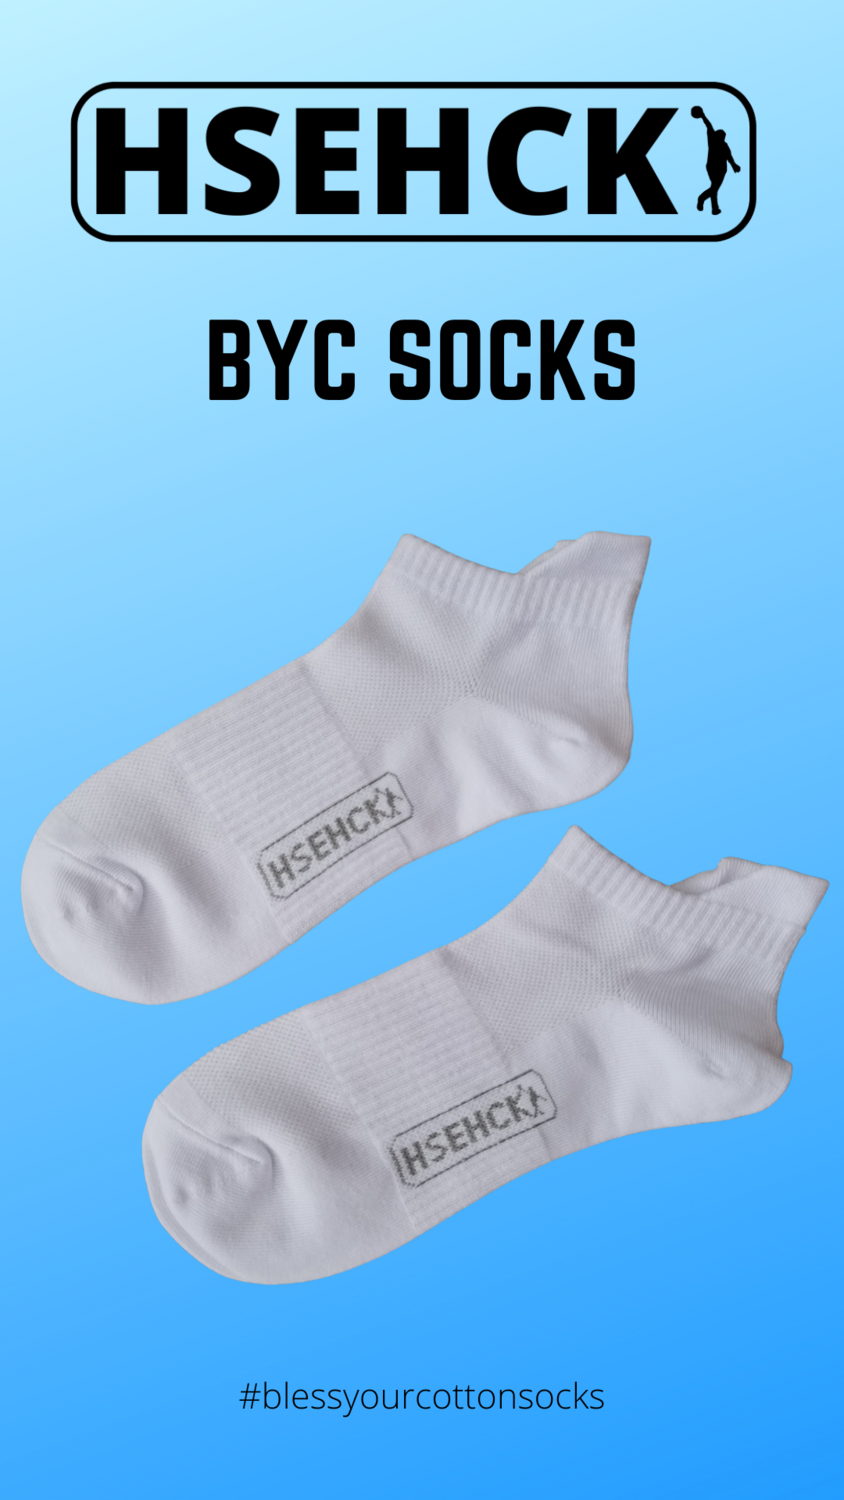 House Hack BYC Socks Size 6-10